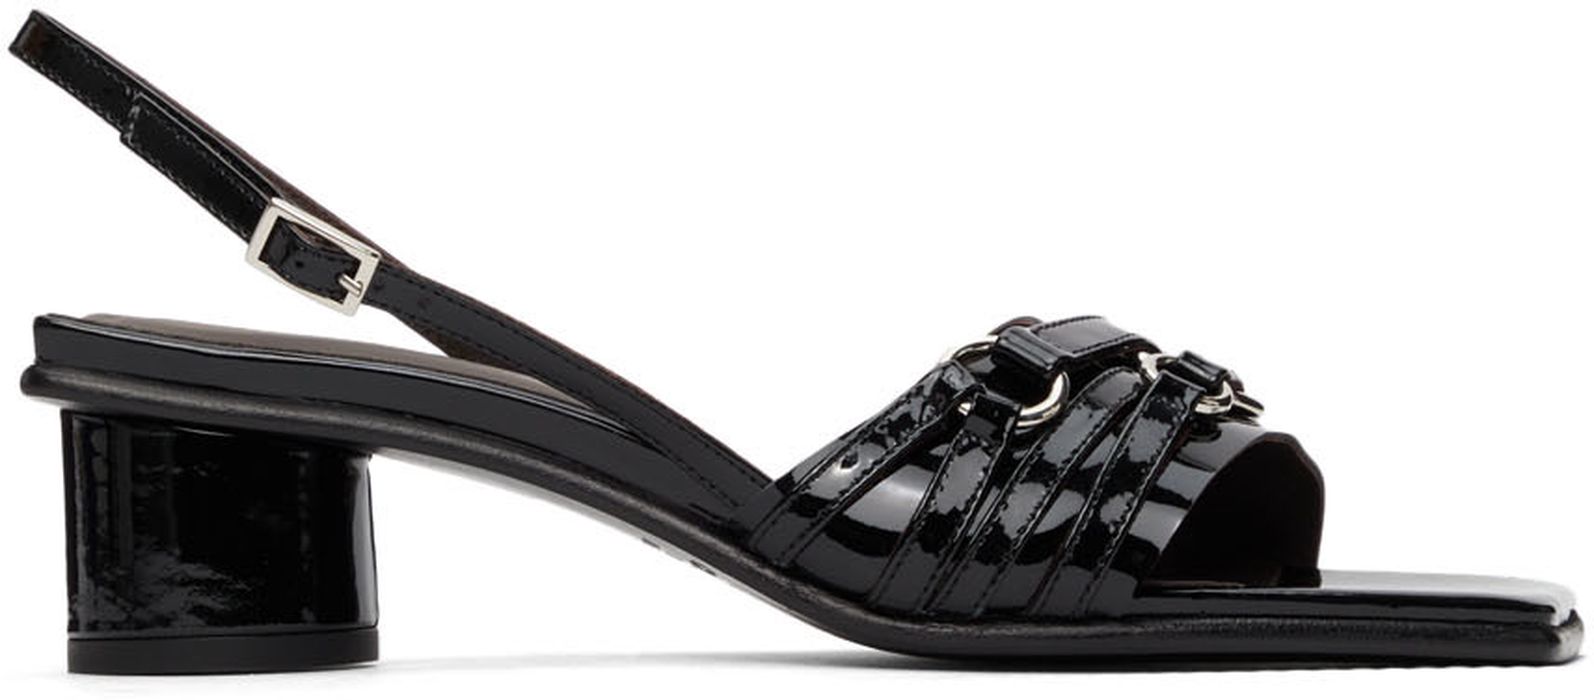 Justine Clenquet SSENSE Exclusive Black Drew Heeled Sandals